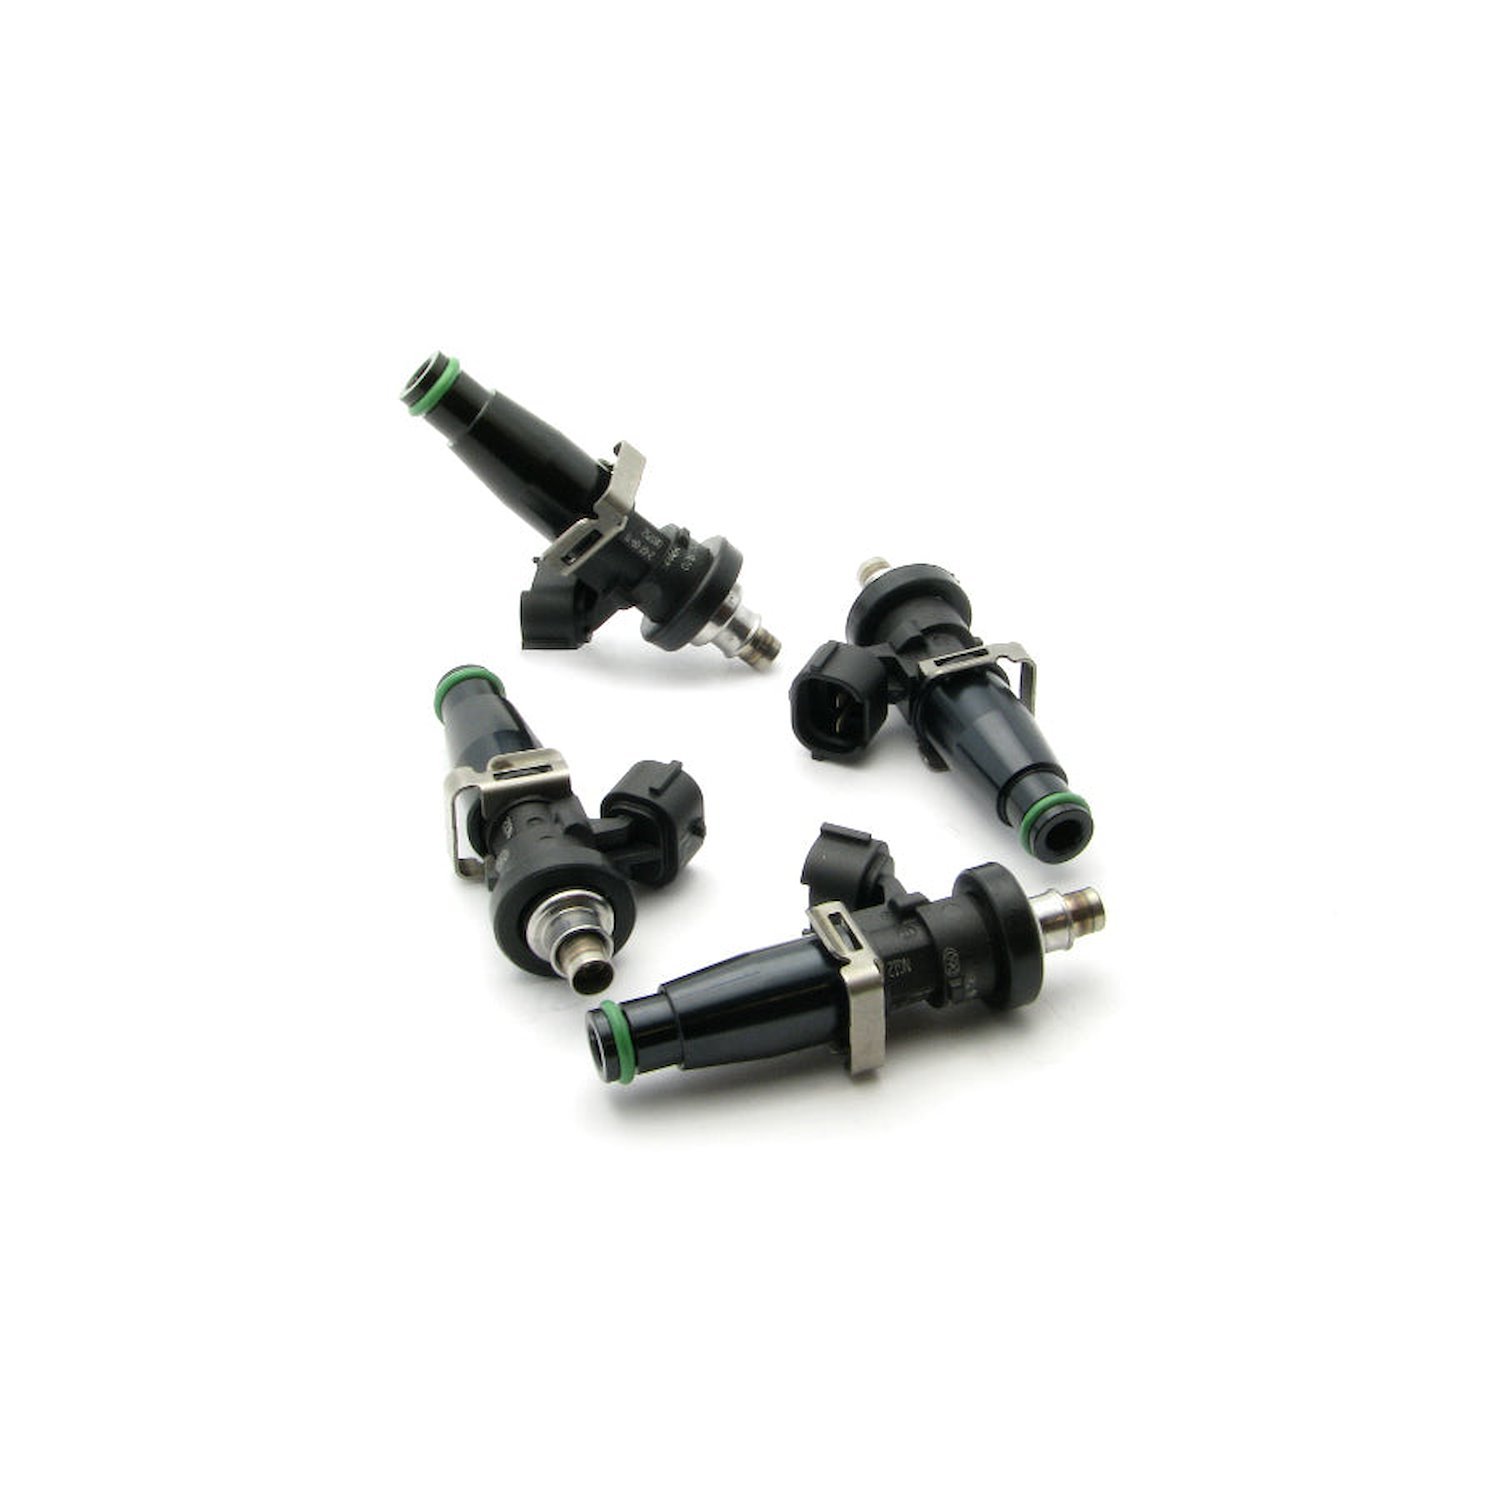 16S0422004  2200cc Injectors for Honda Civic B/D/H 92-00 and Integra OBD I and II B/D/H 91-01